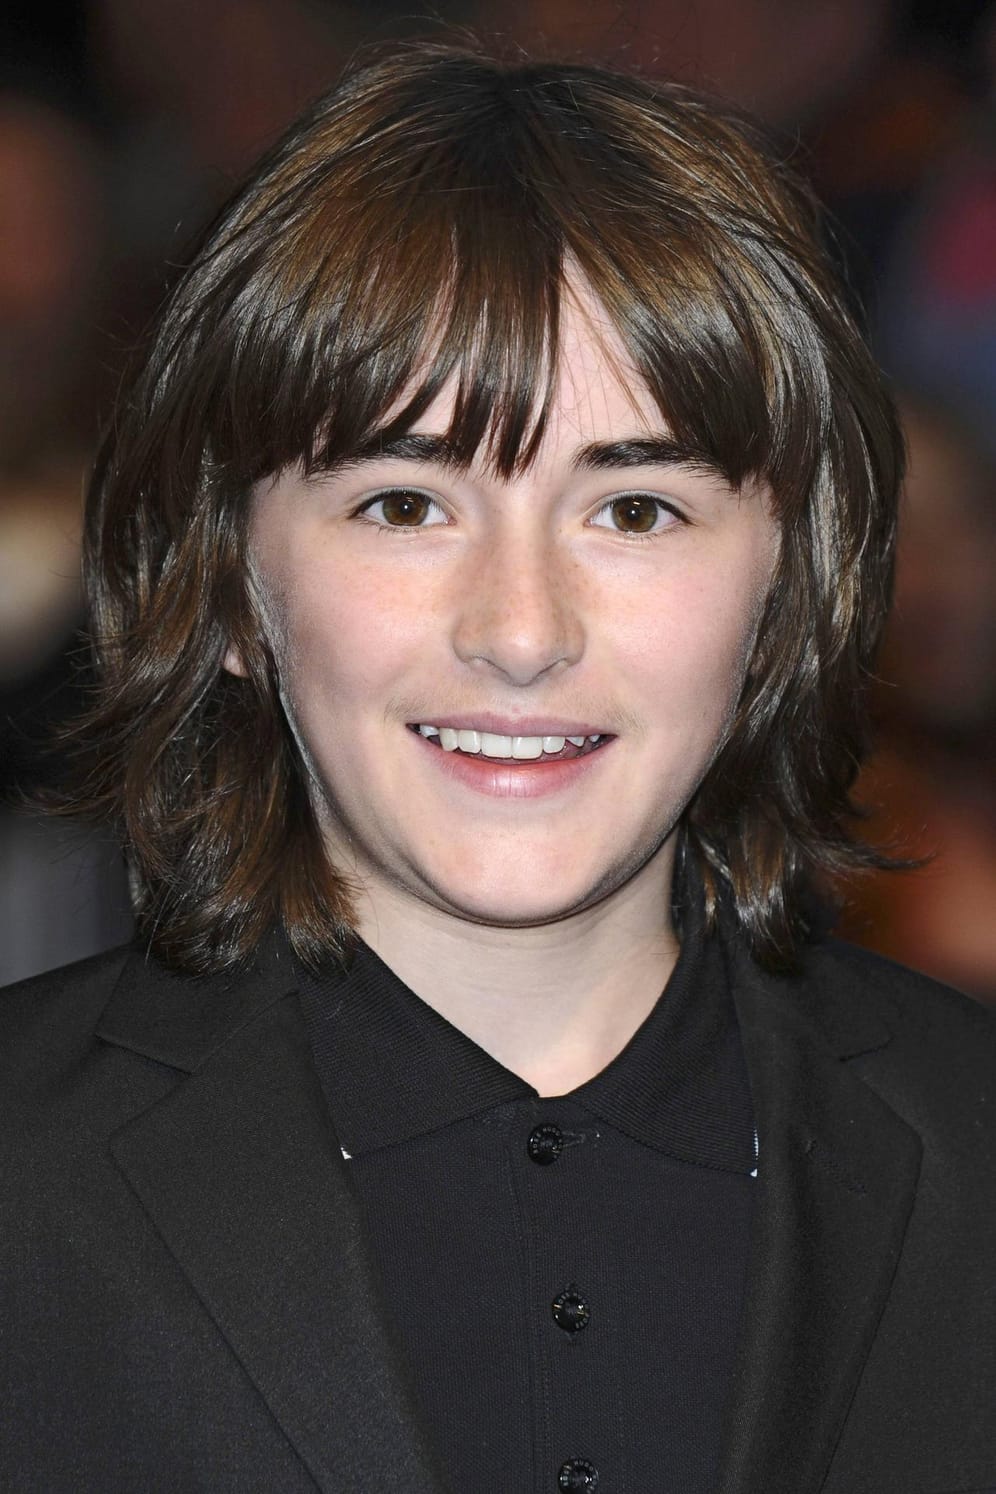 Isaac Hempstead-Wright 2011: Der damals zwölfjährige Darsteller spielte in der ersten Staffel von "Game of Thrones" Bran Stark.